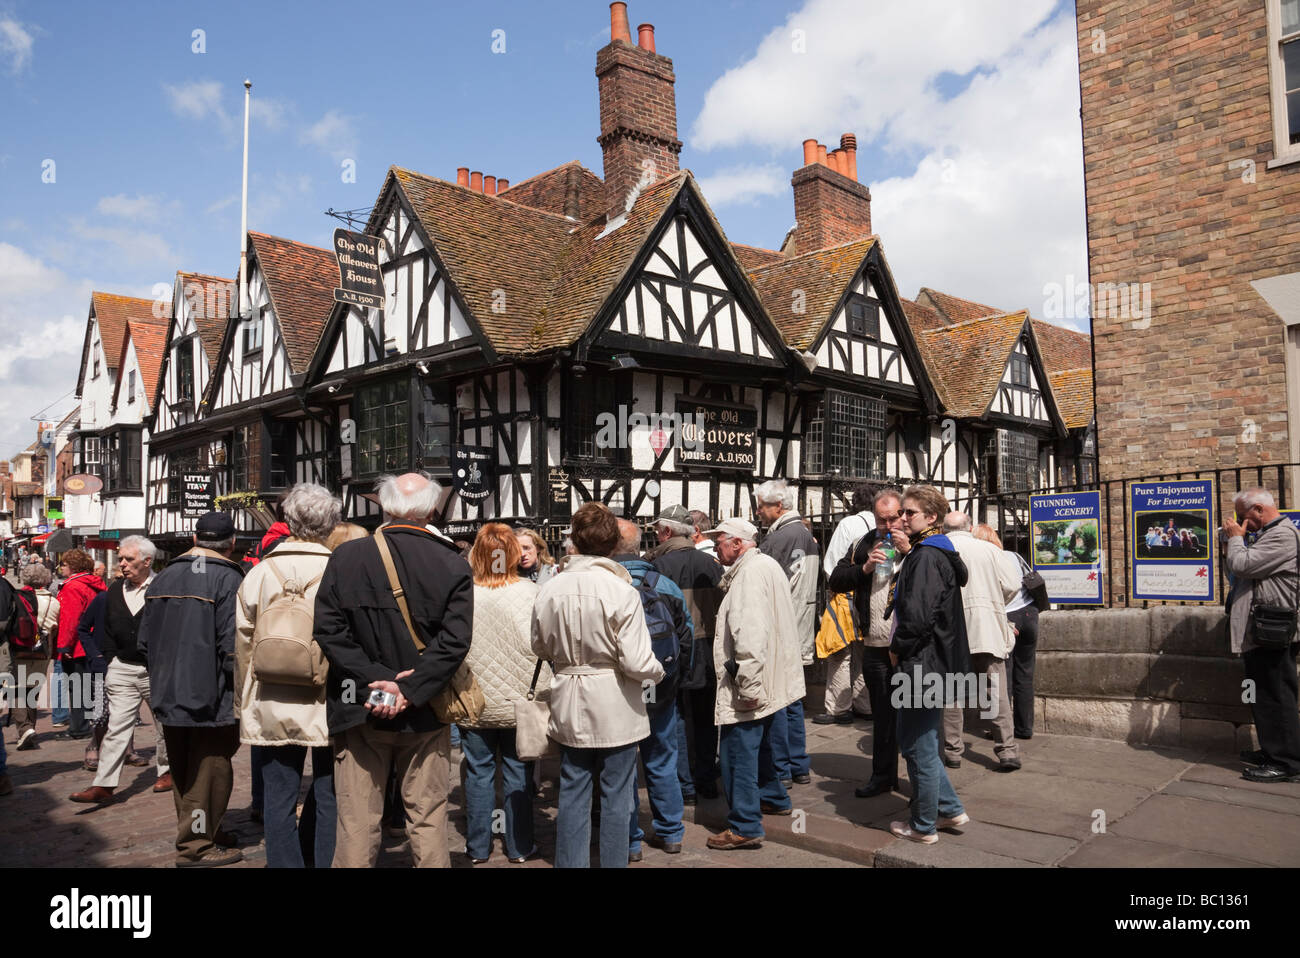 Groupe de touristes par le XVIe siècle ancien Weavers House bâtiment à pans de bois construit 1500 dans le centre-ville. Canterbury Kent Angleterre Royaume-Uni Banque D'Images